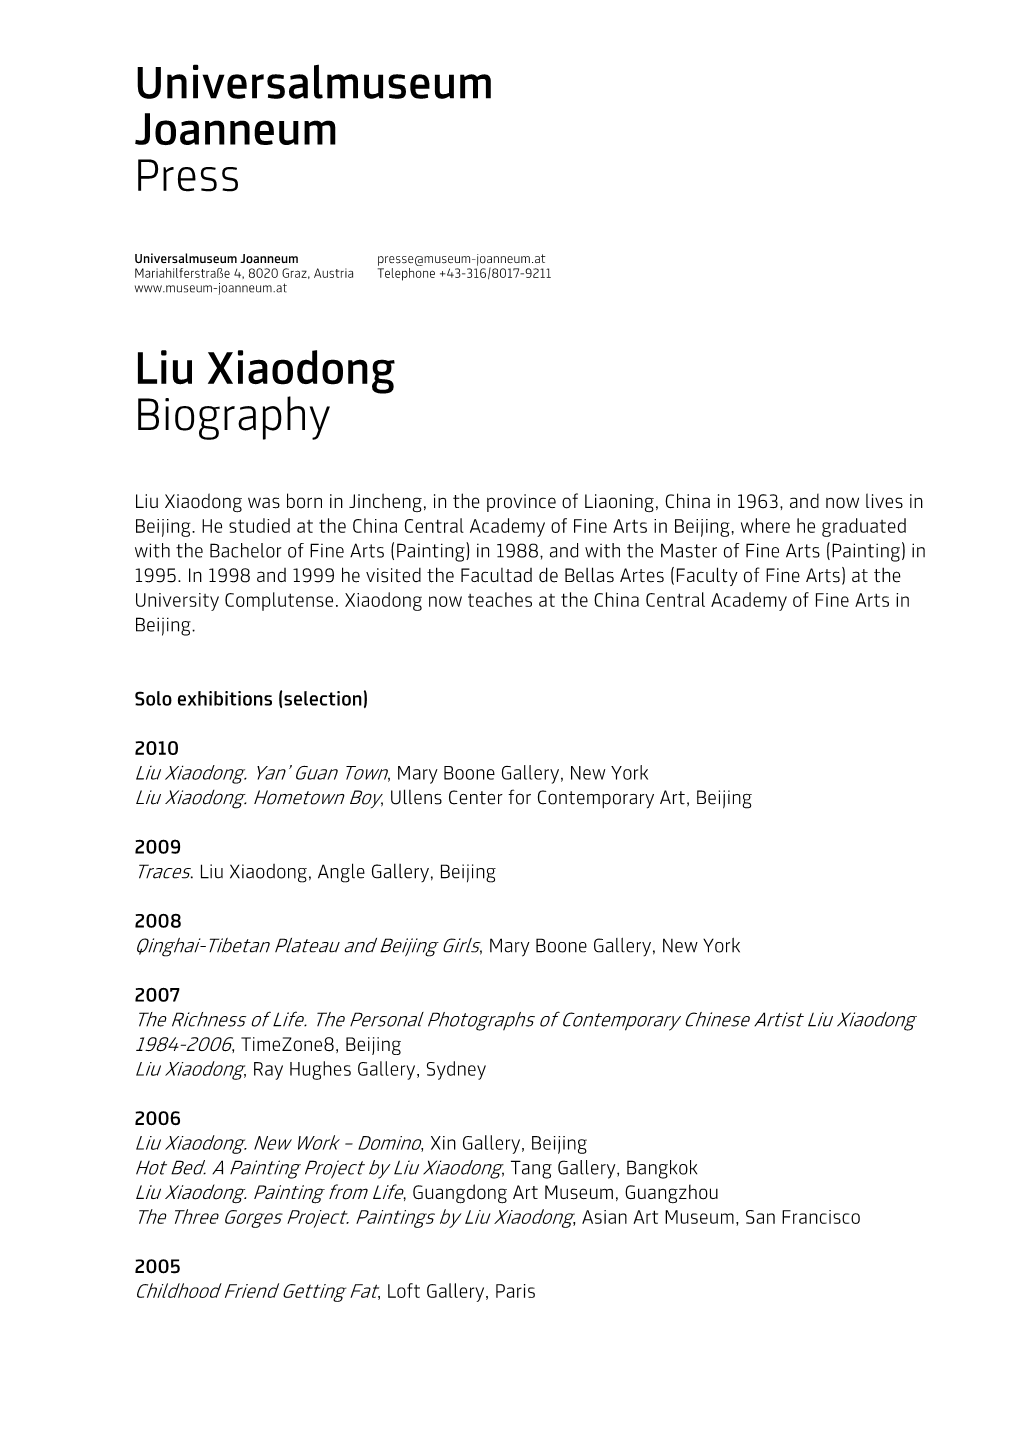 Universalmuseum Joanneum Press Liu Xiaodong Biography